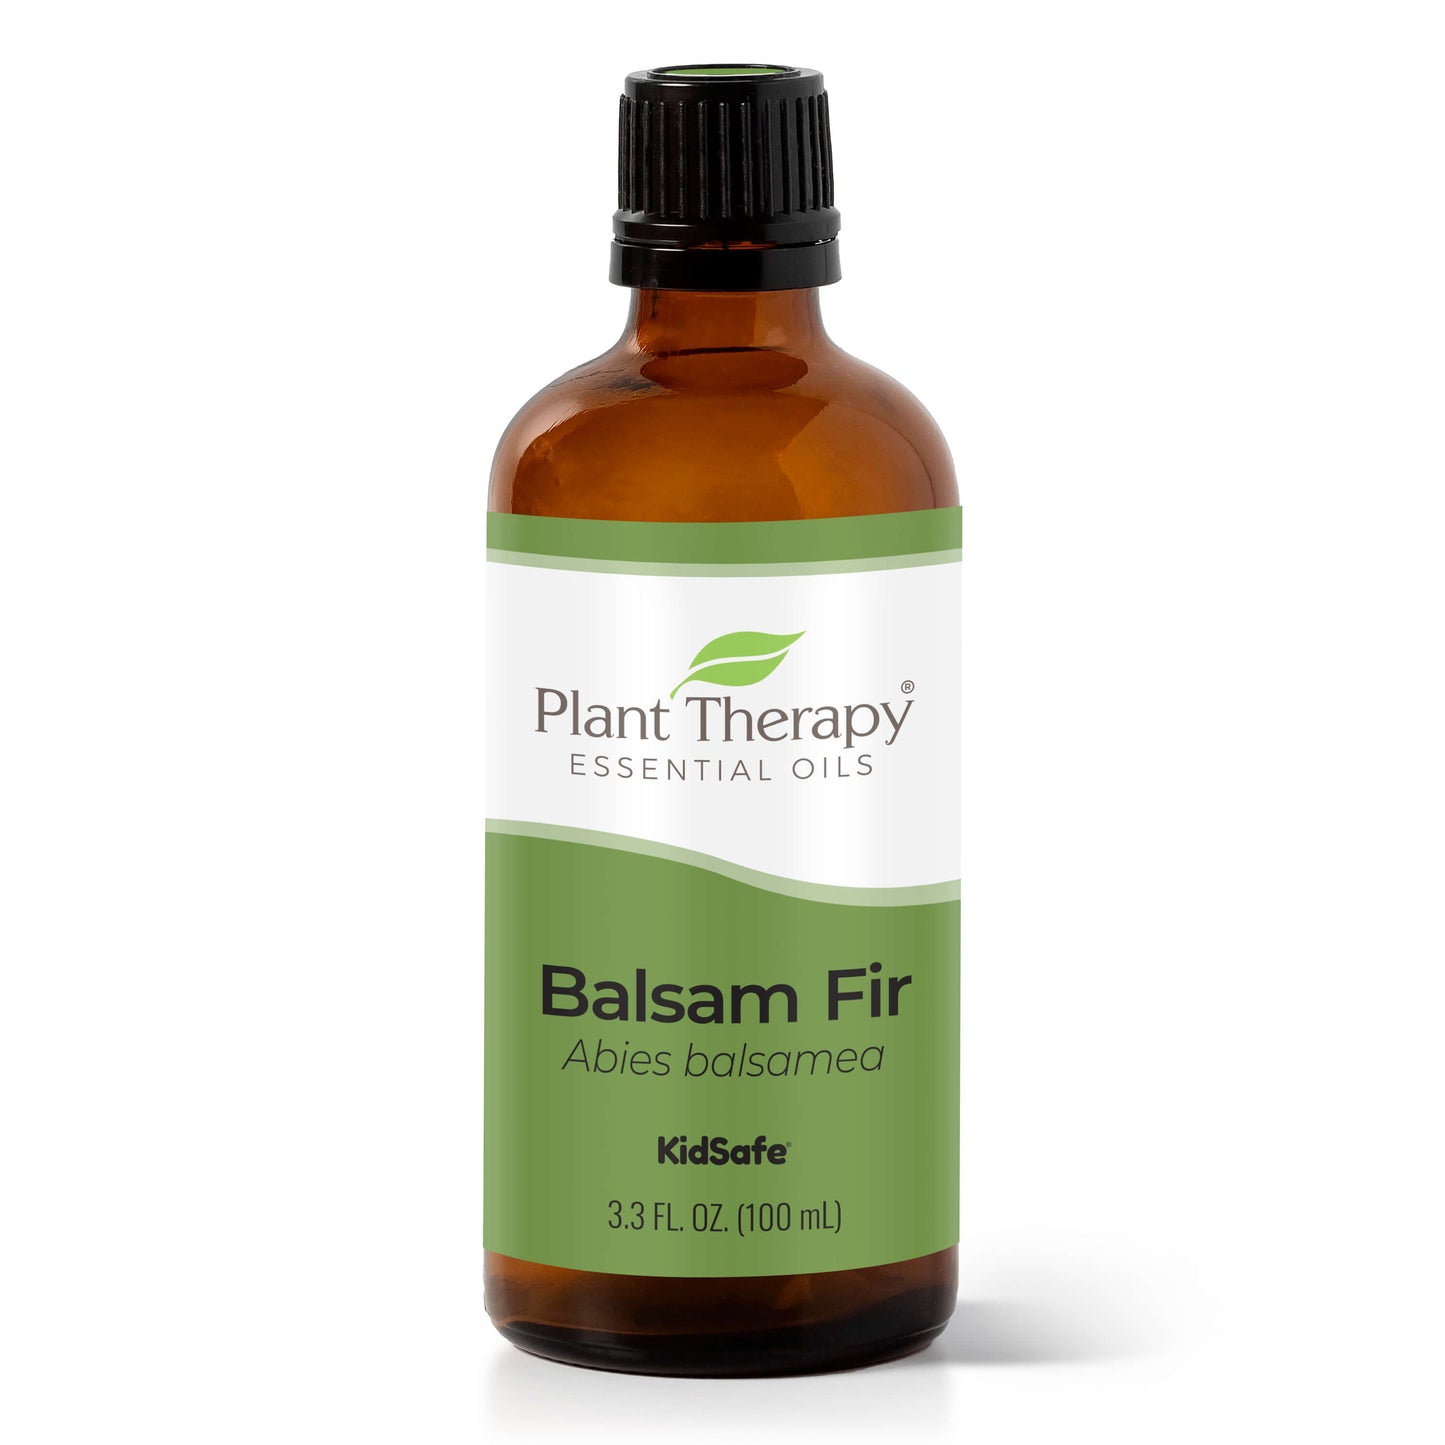 Balsam Fir Essential Oil 100 mL bottle